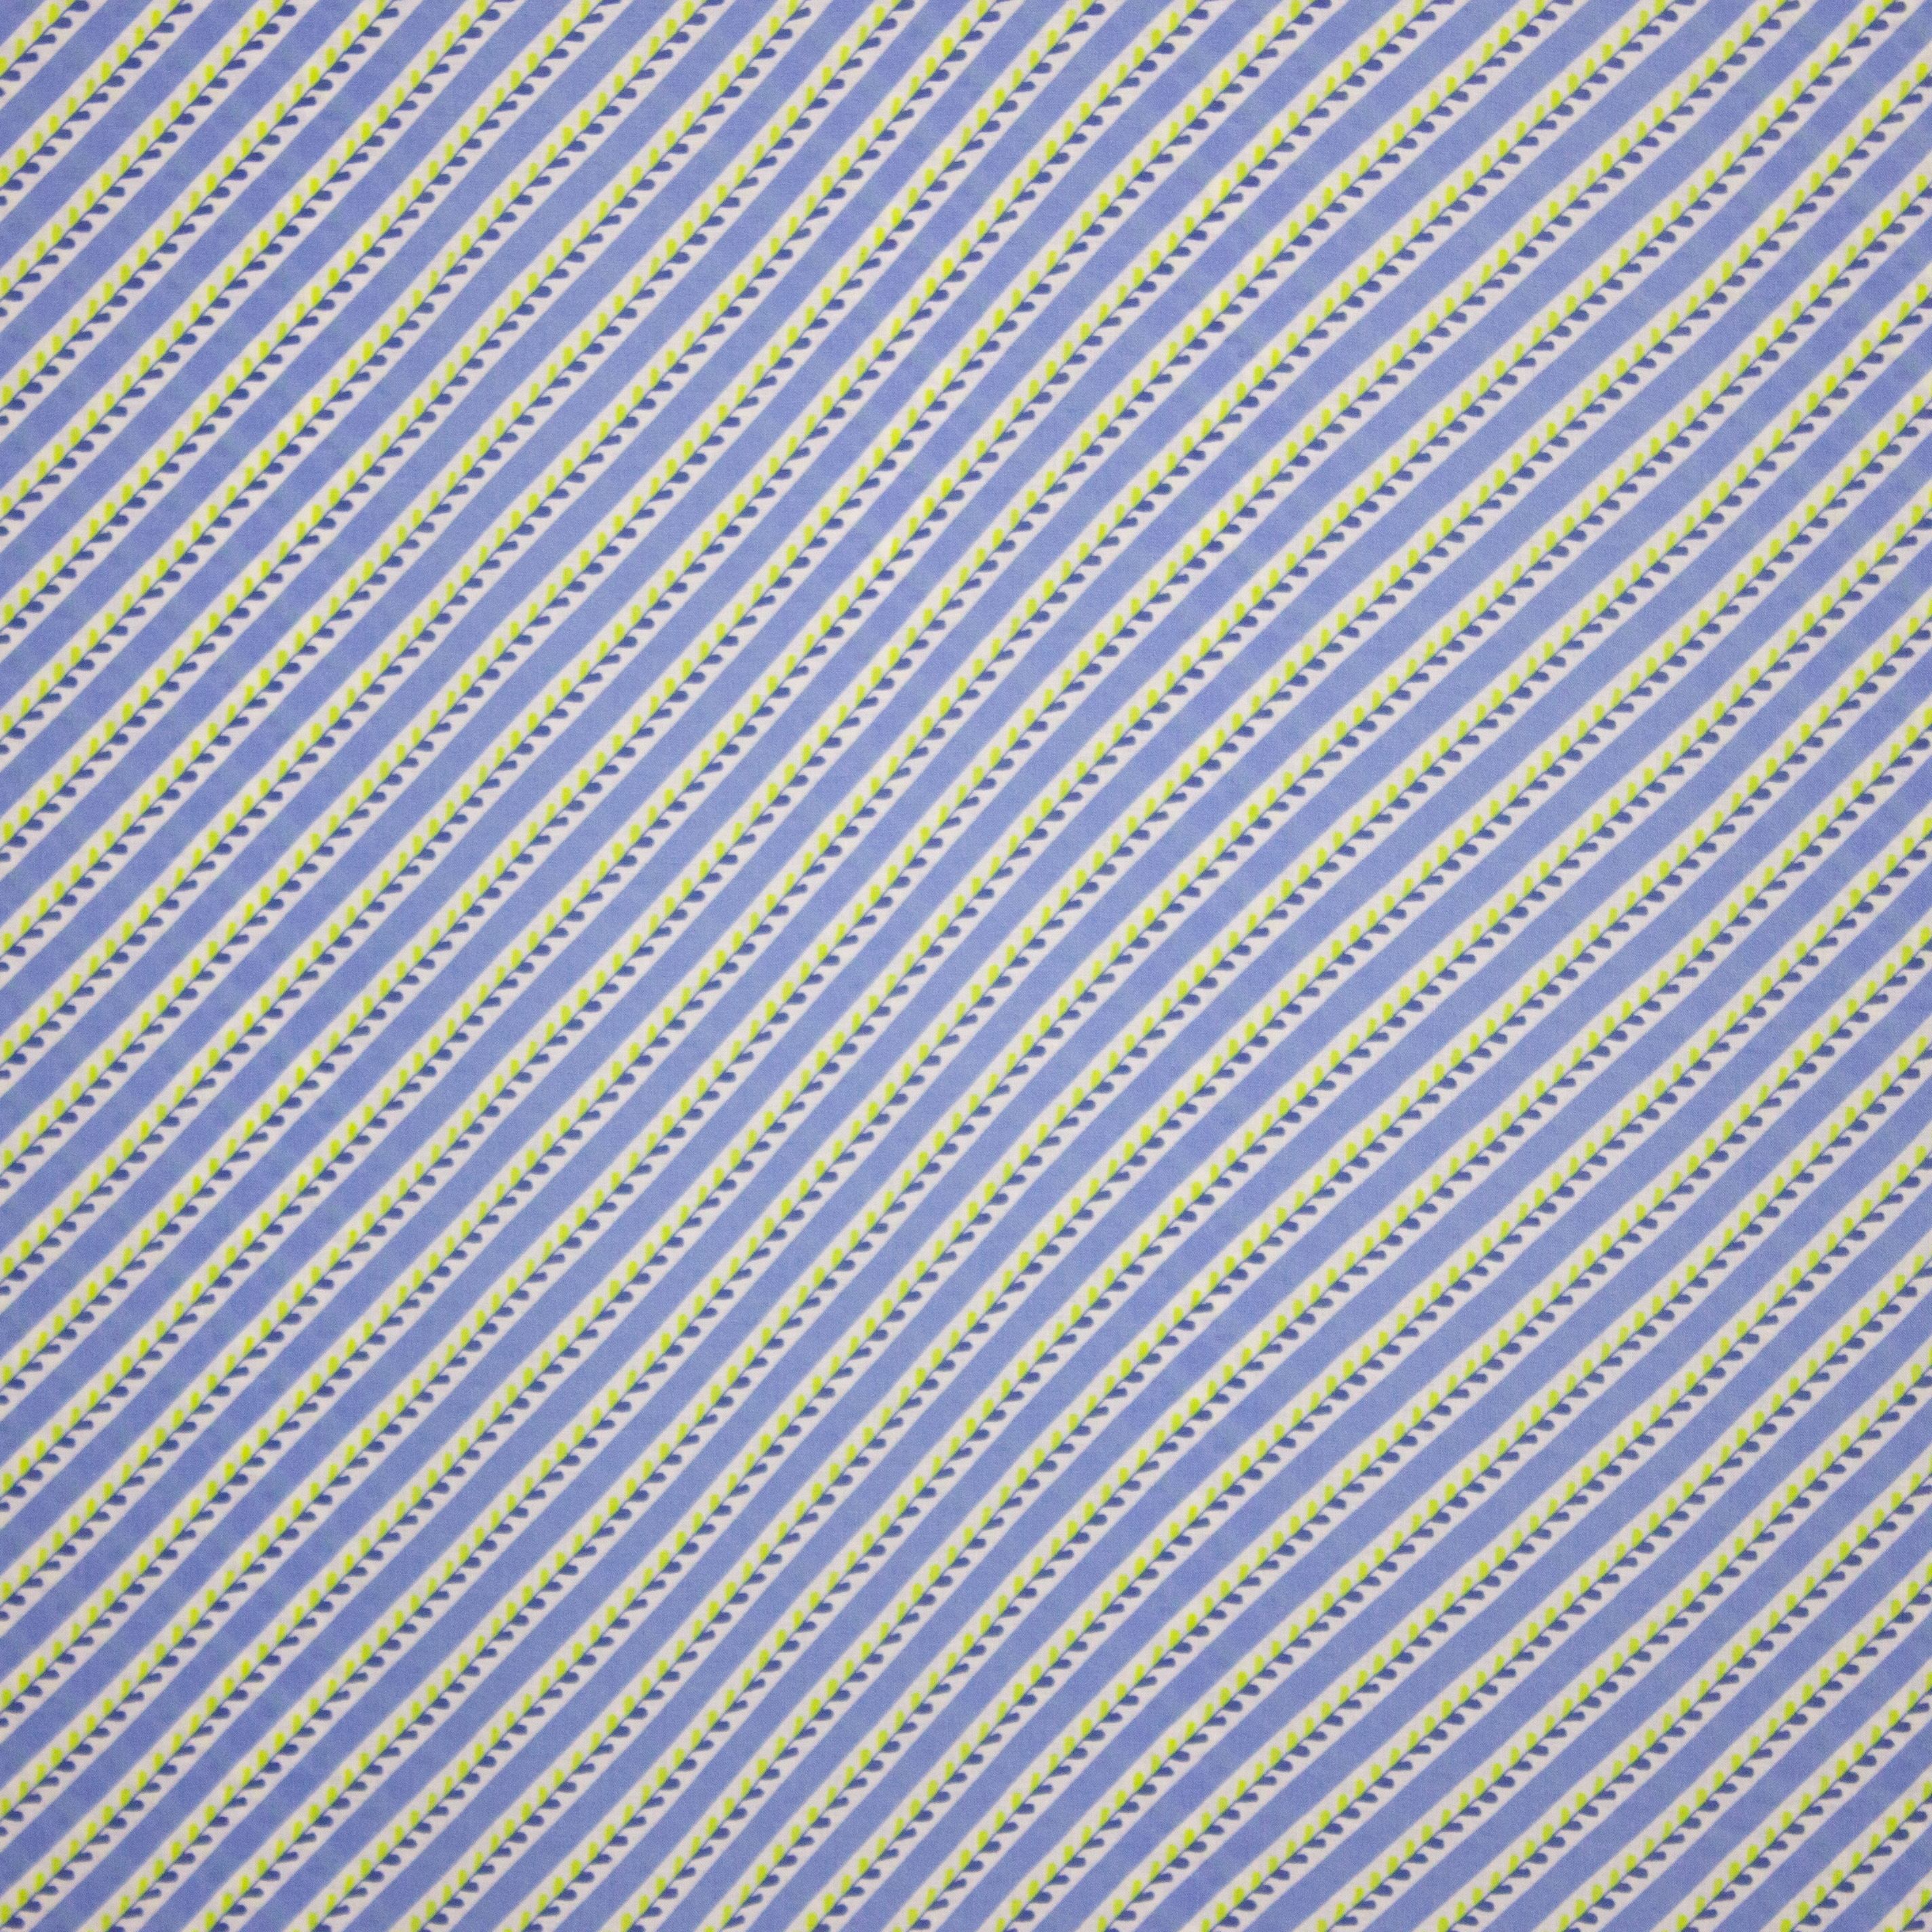 Blauw / wit schuin gestreepte viscose met fijn blaadjes patroon